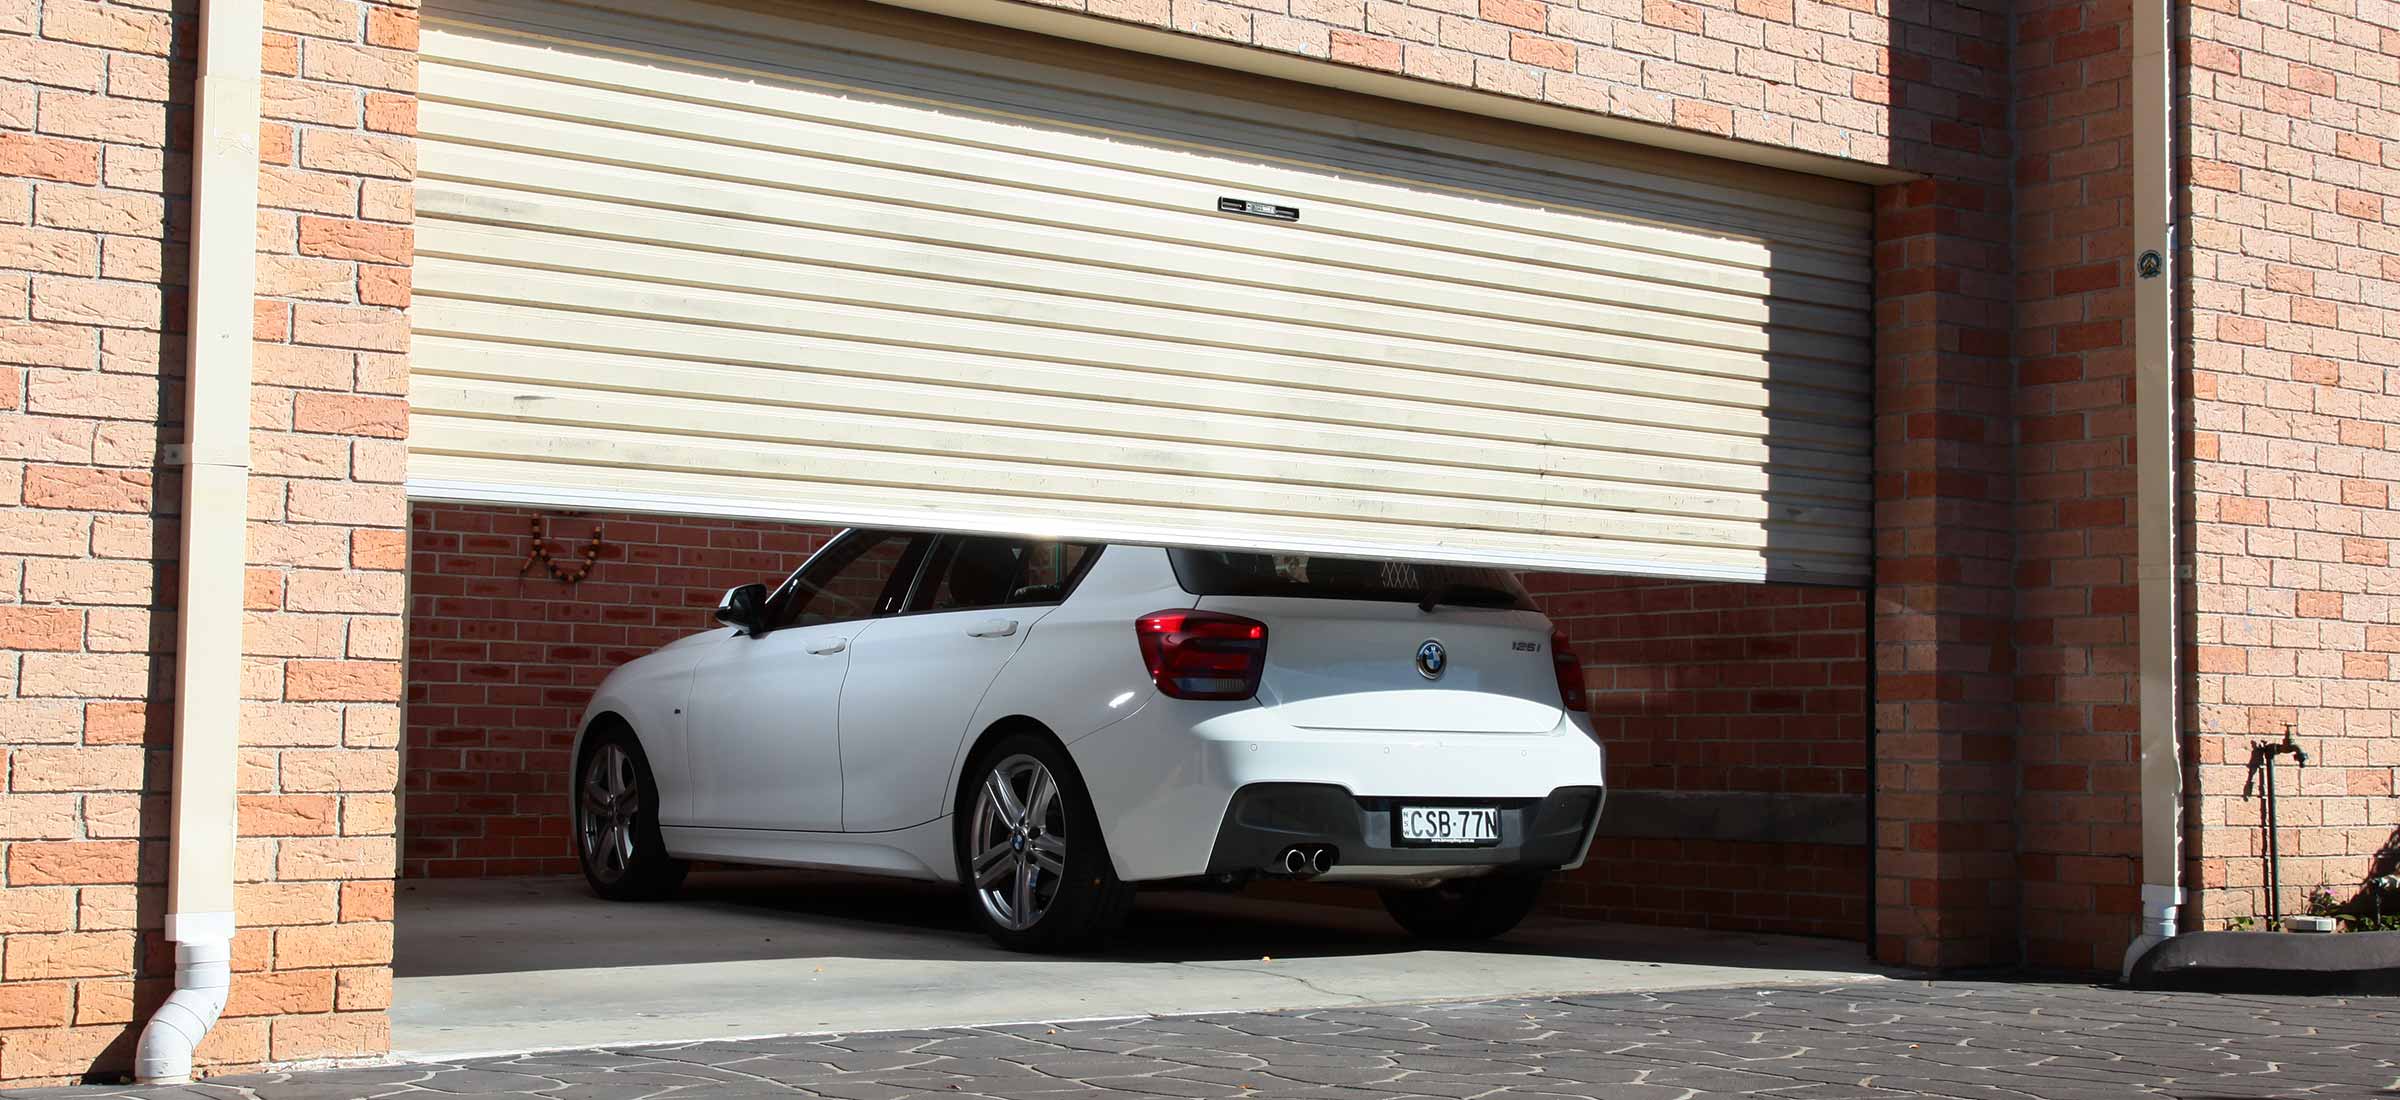 Reasons to seek professional automatic garage door repairs in Sydney